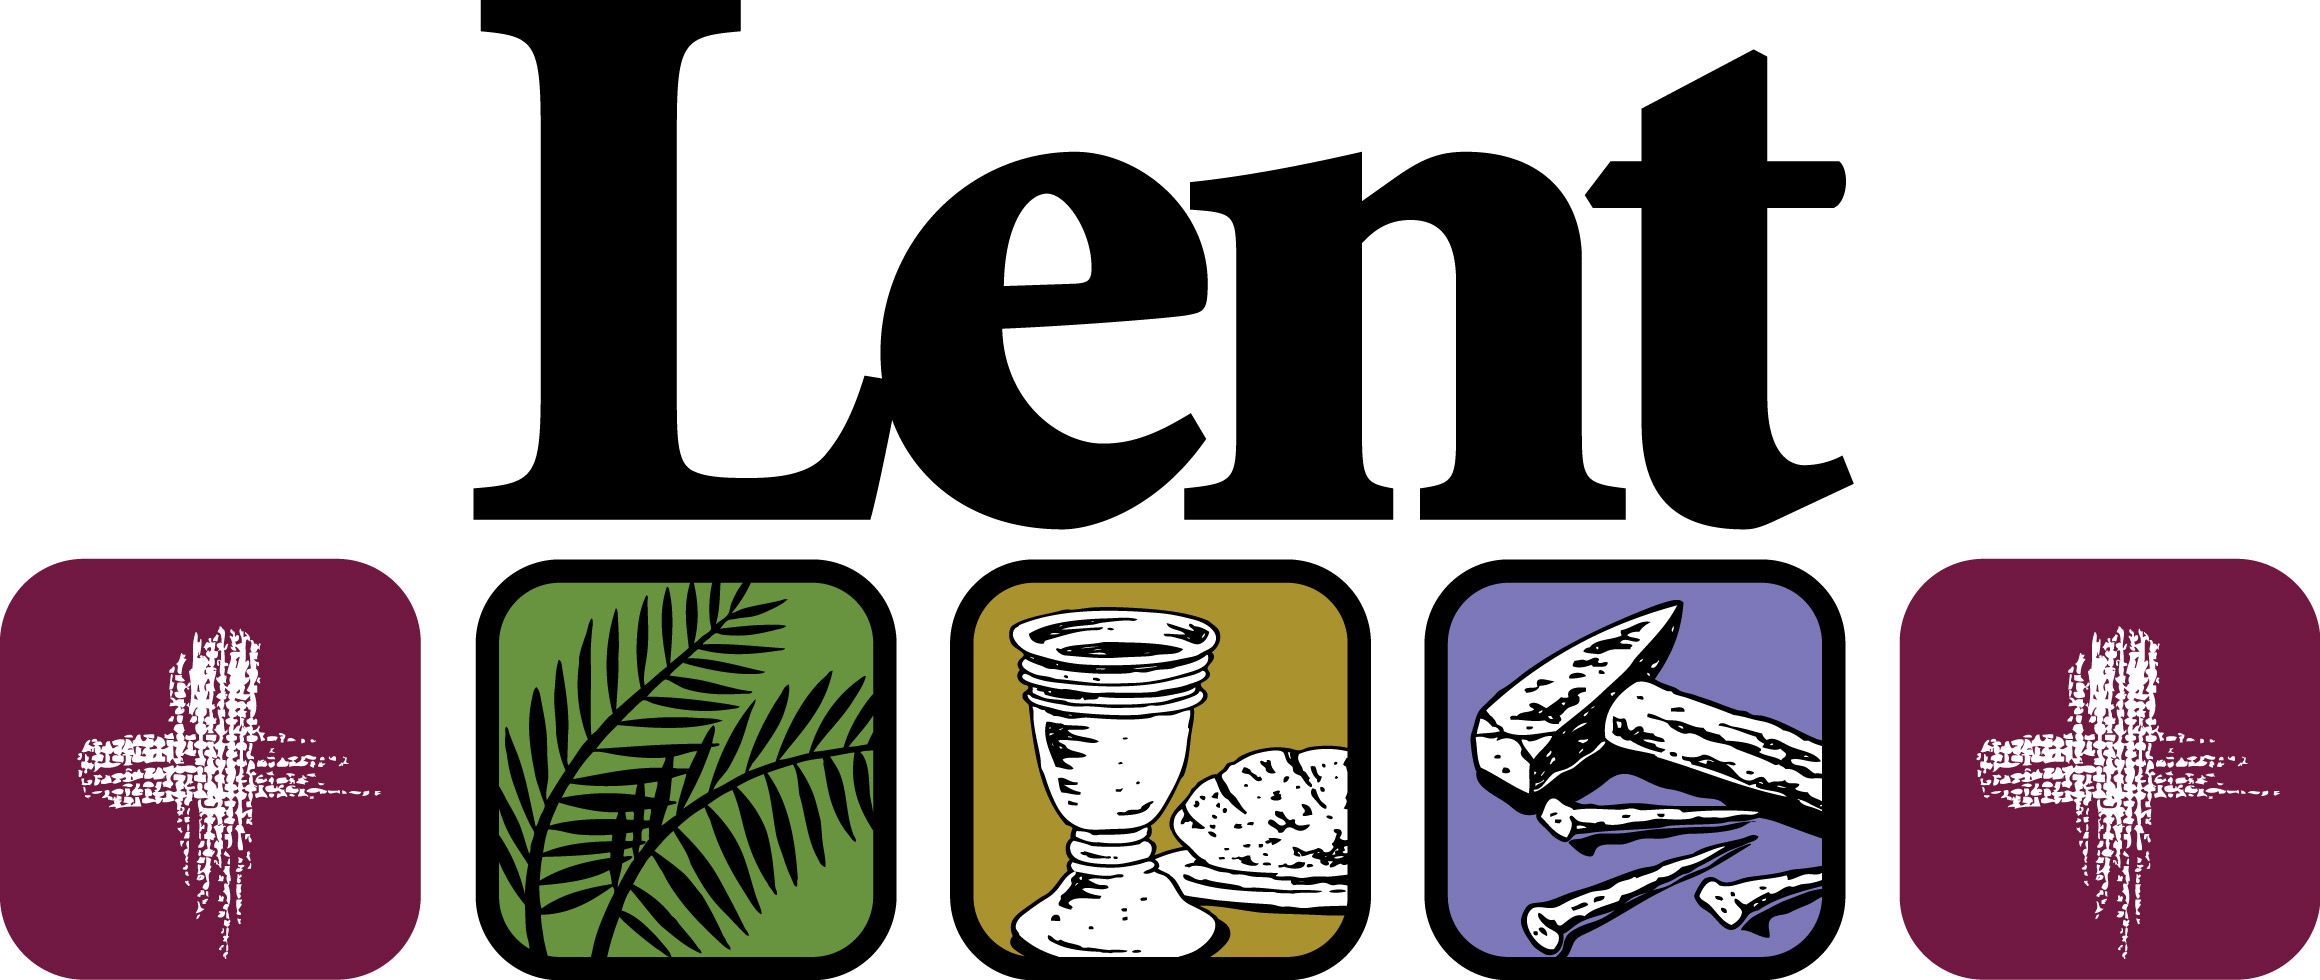 About Lent Lent 201 6 Lent .